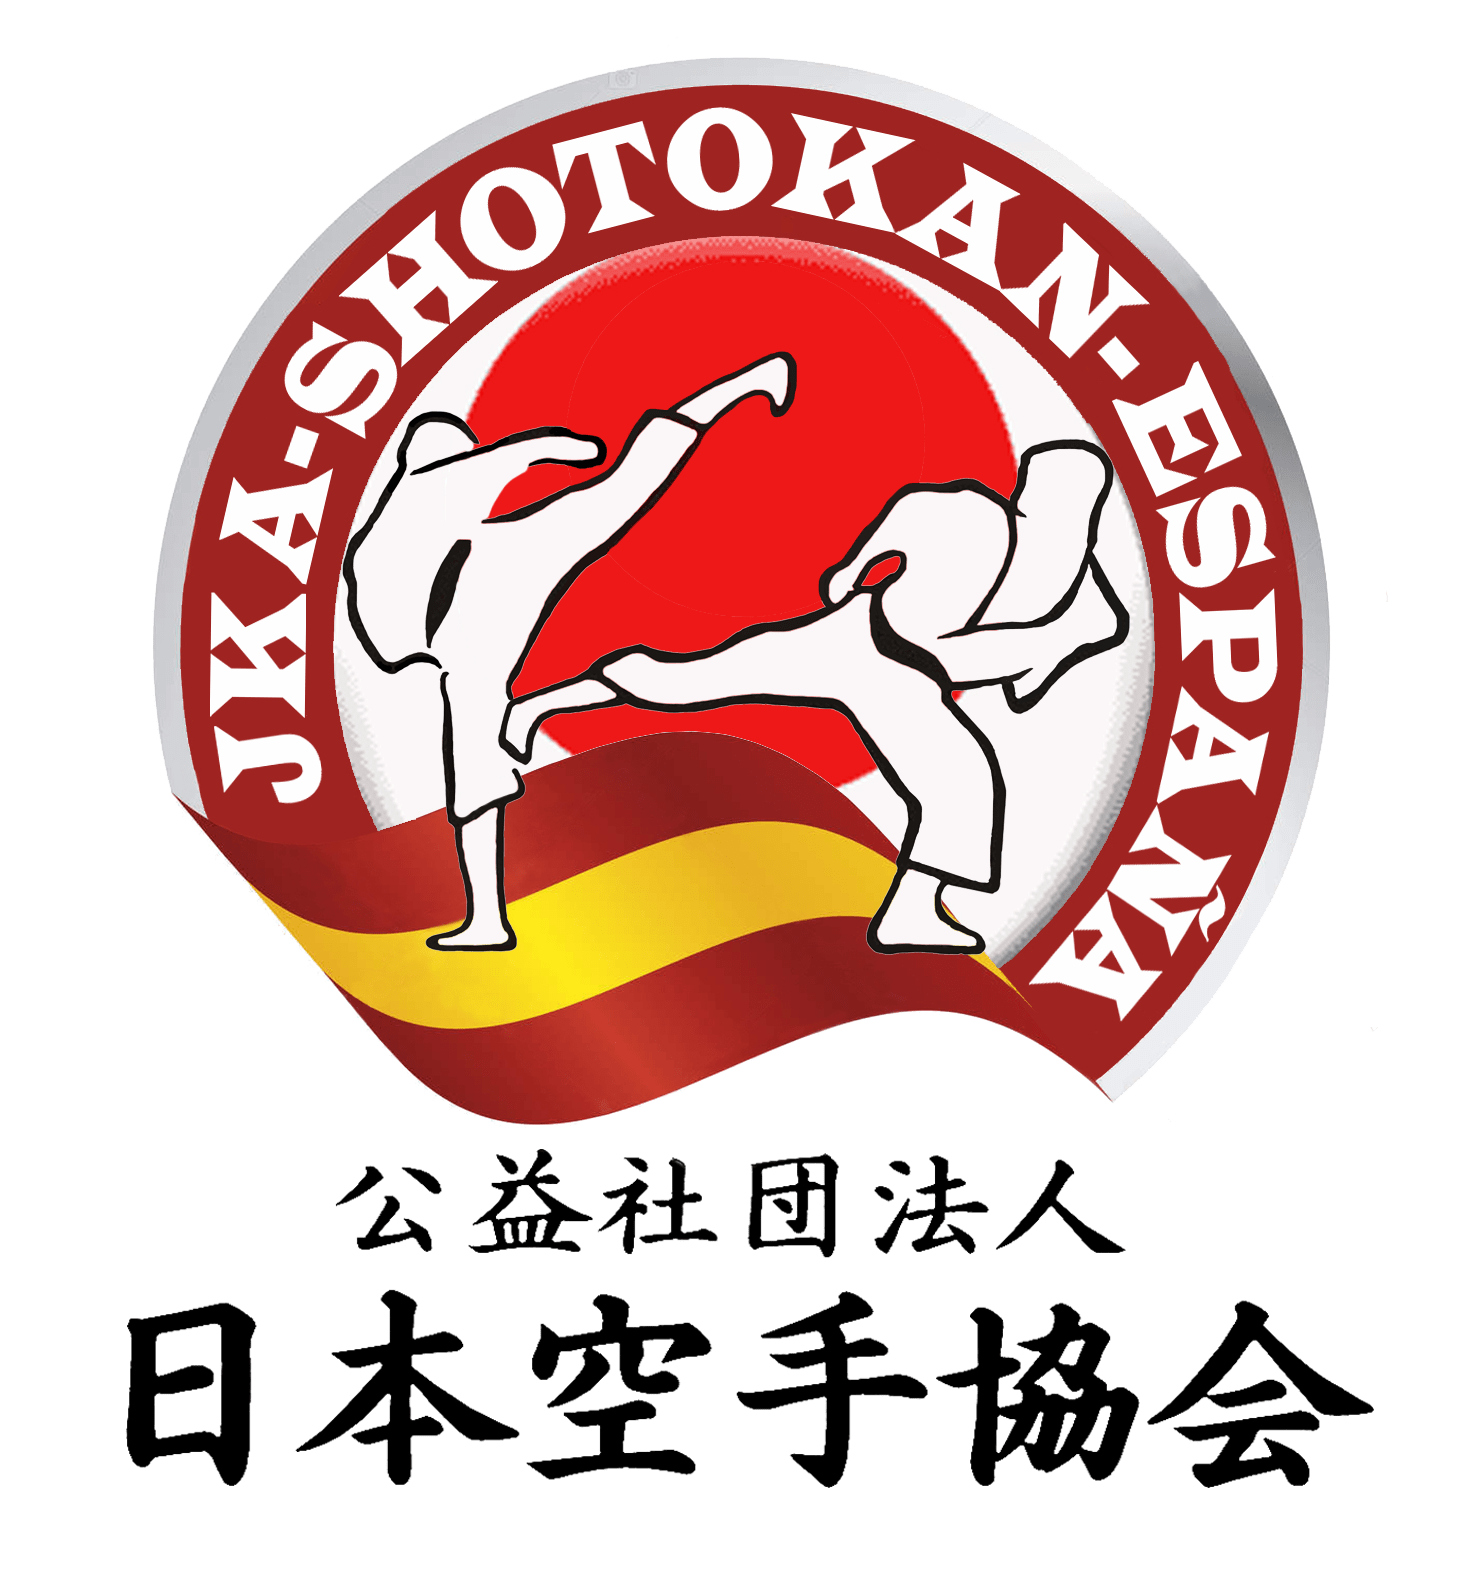 Jka Shotokan España